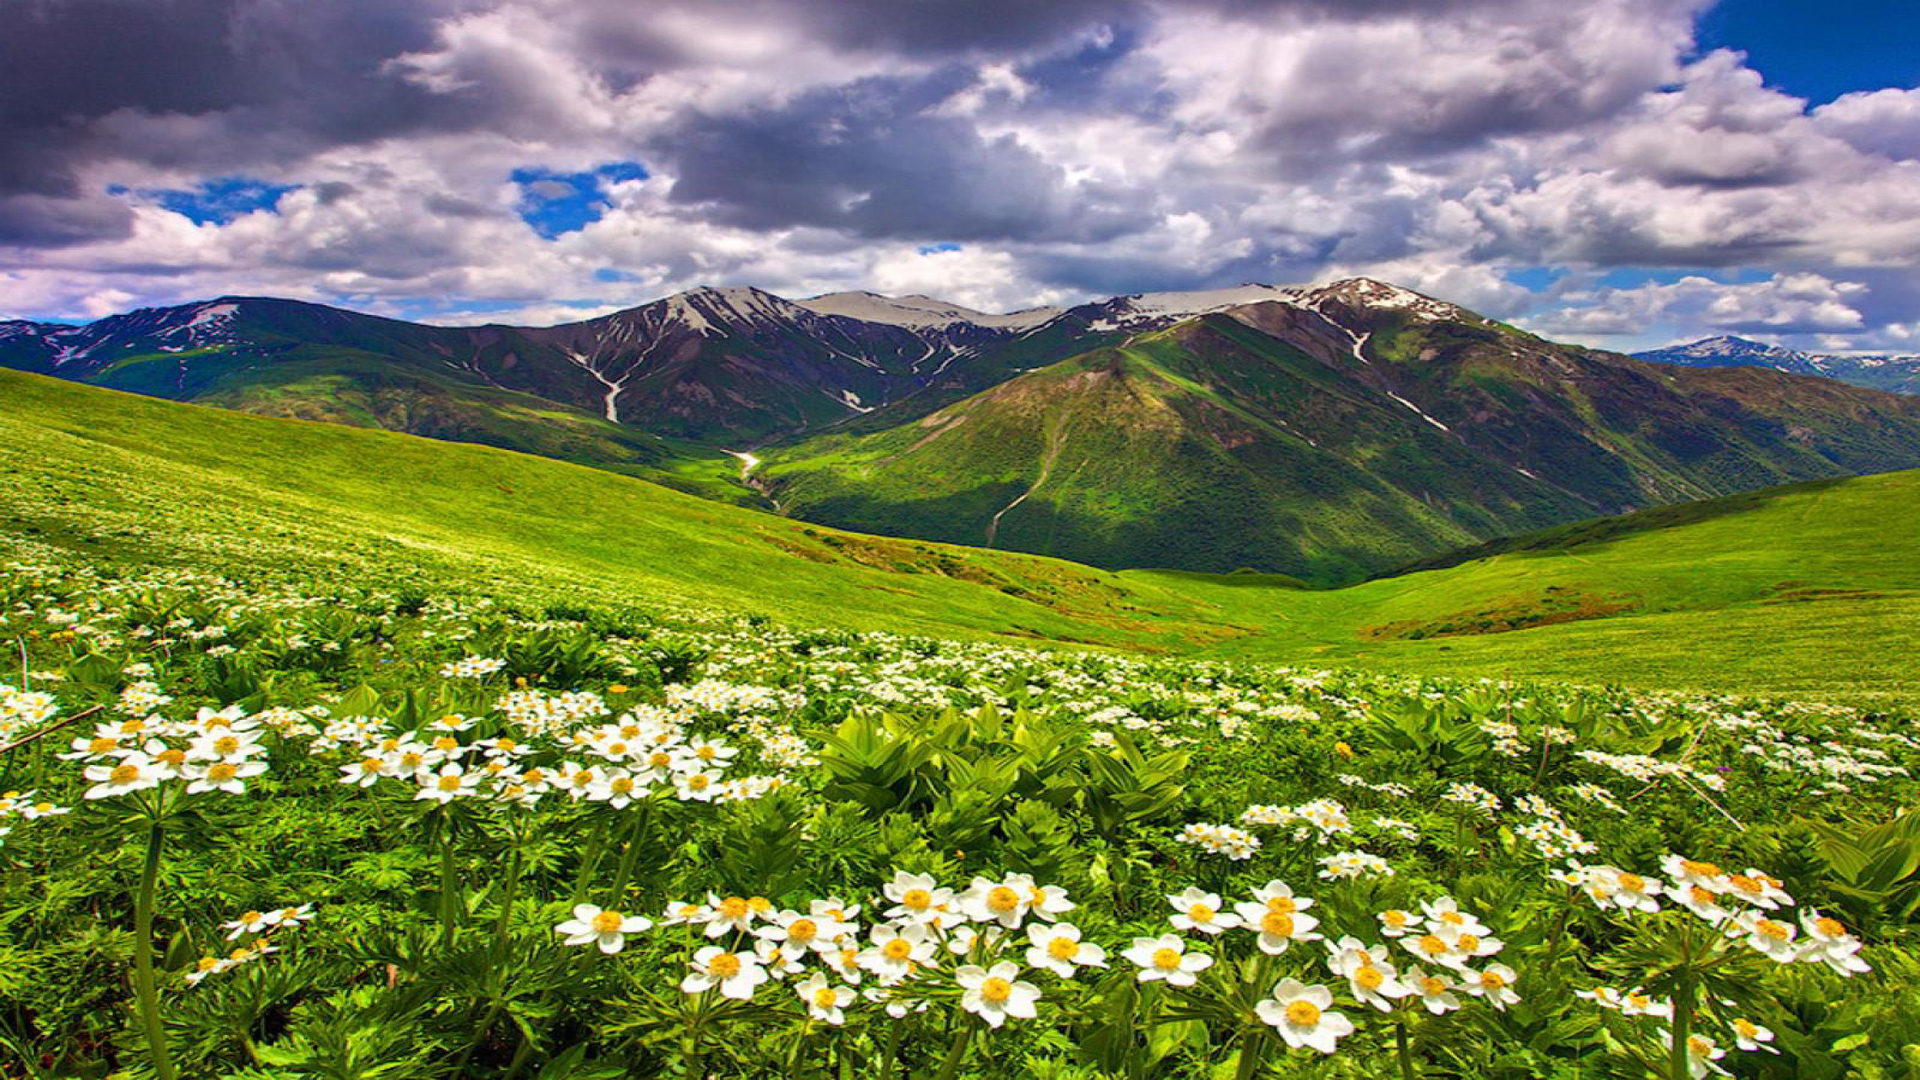 Field Of Flowers In The Mountain Summer Sky HD Wallpaper 10981, Wallpaper13.com